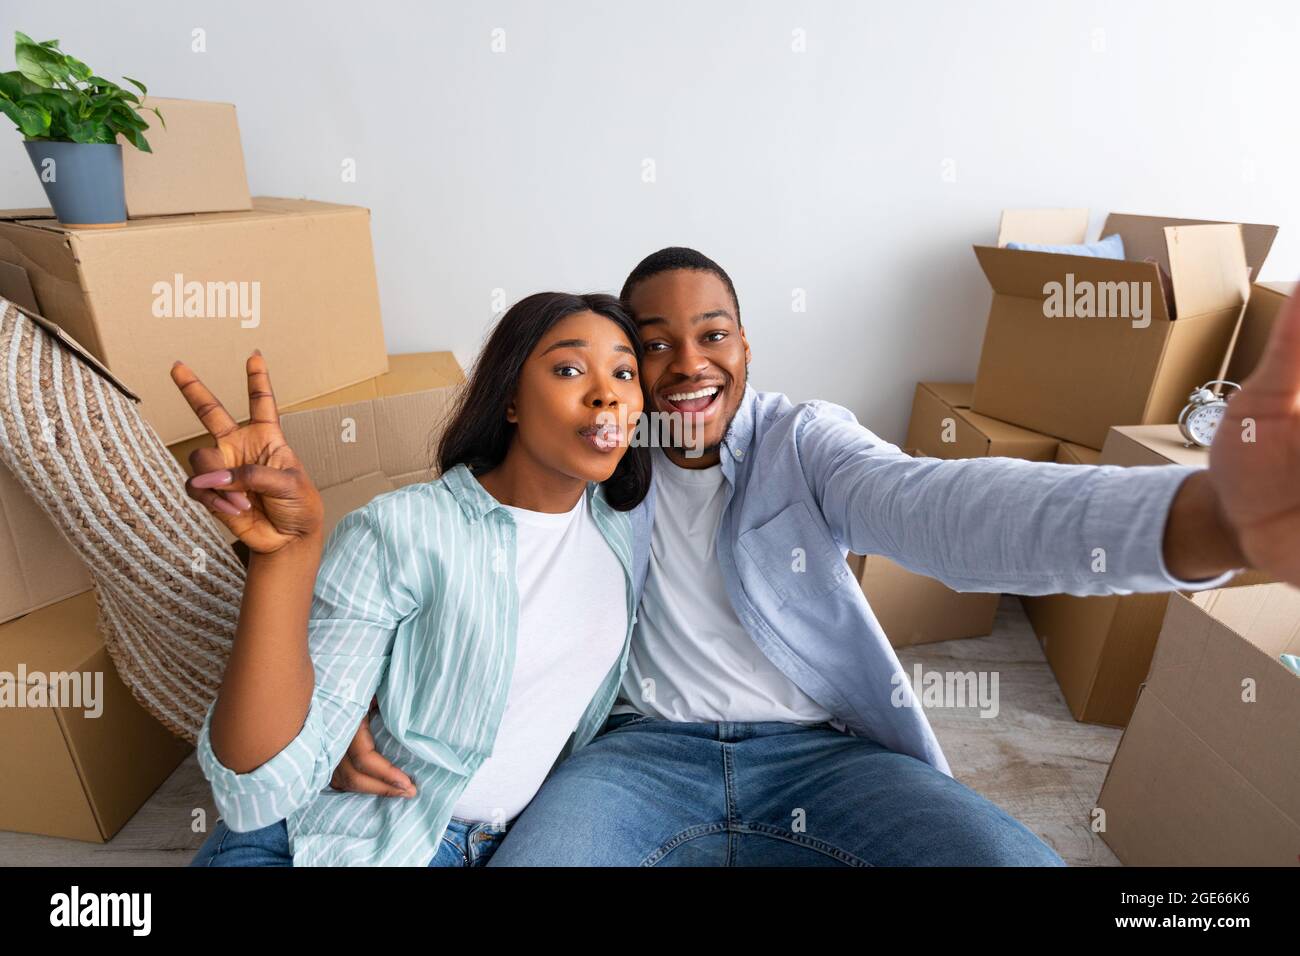 Felici proprietari di casa. Giovane coppia afro-americana che prende selfie e gesturing segno di vittoria dopo essersi trasferito in nuova casa e seduto tra scatole di cartone, Foto Stock